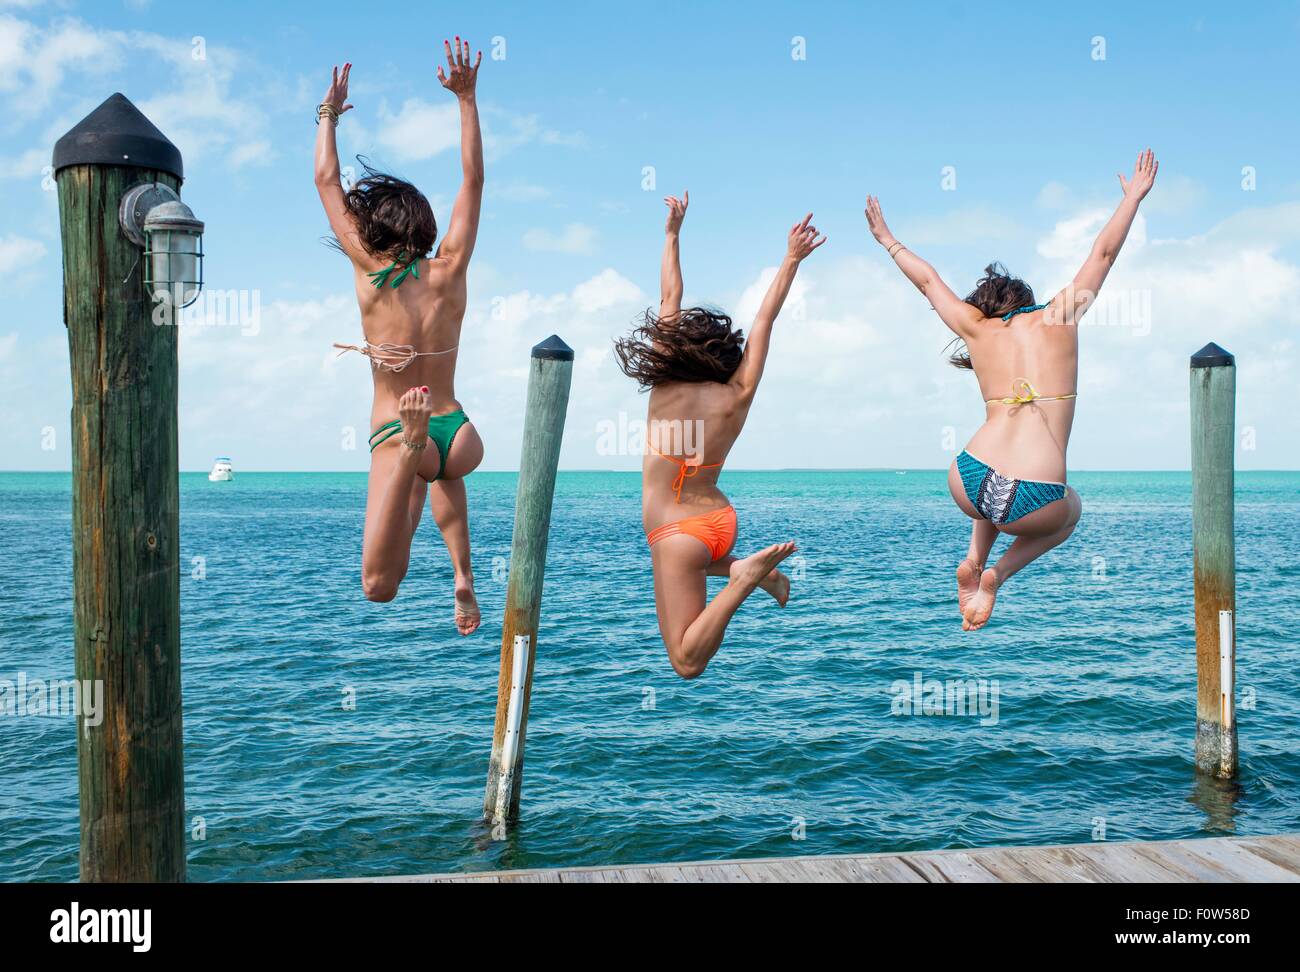 Vista trasera de tres joven saltando desde mar pier, Islamorada, Florida, EE.UU. Foto de stock